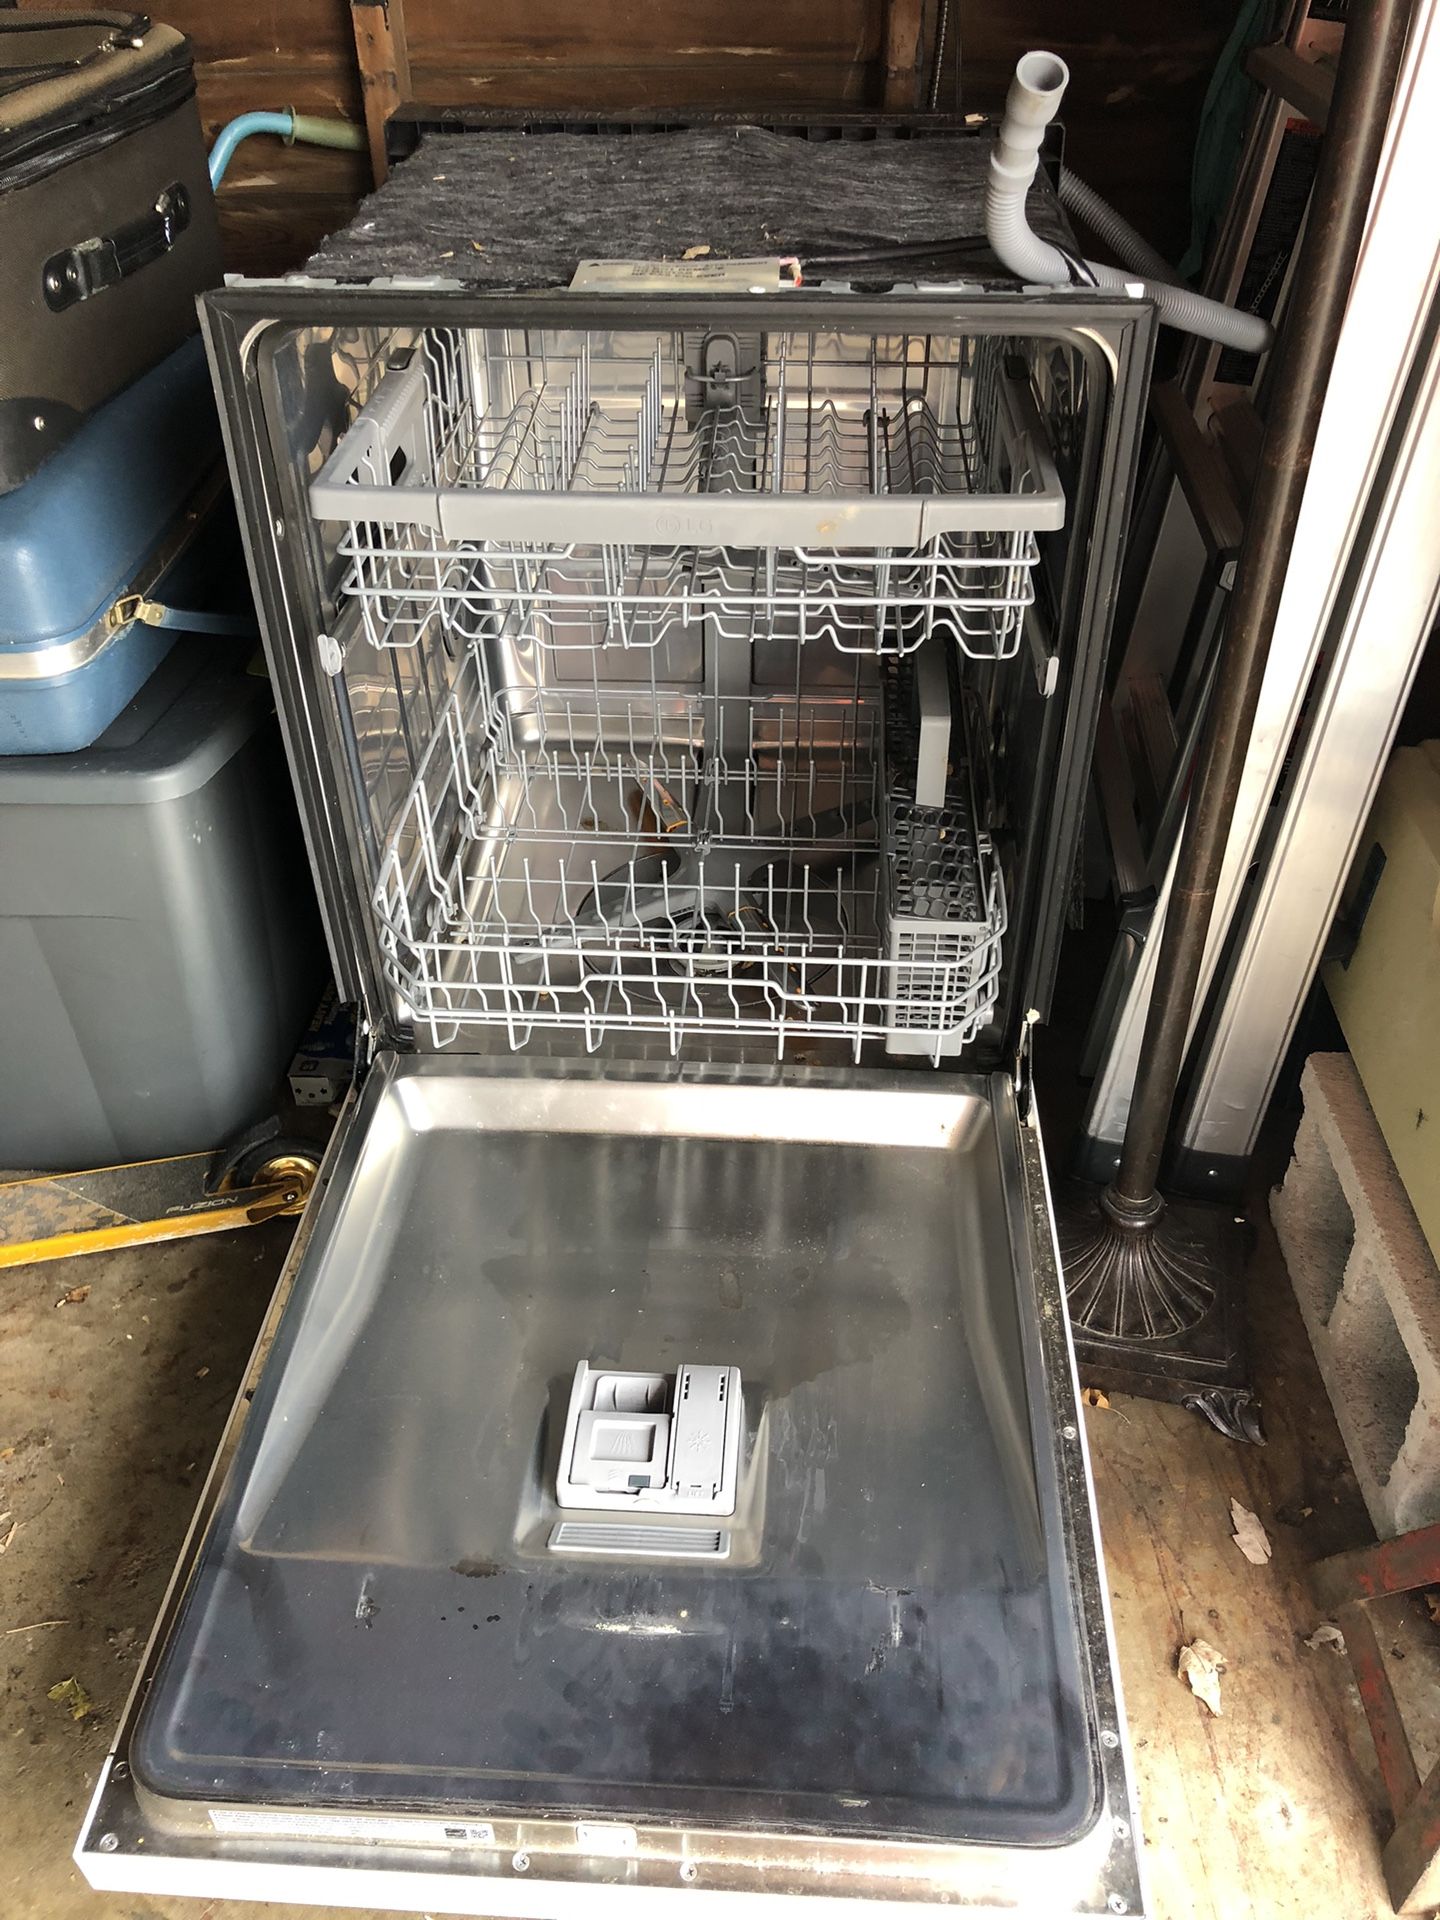 LGA dishwasher